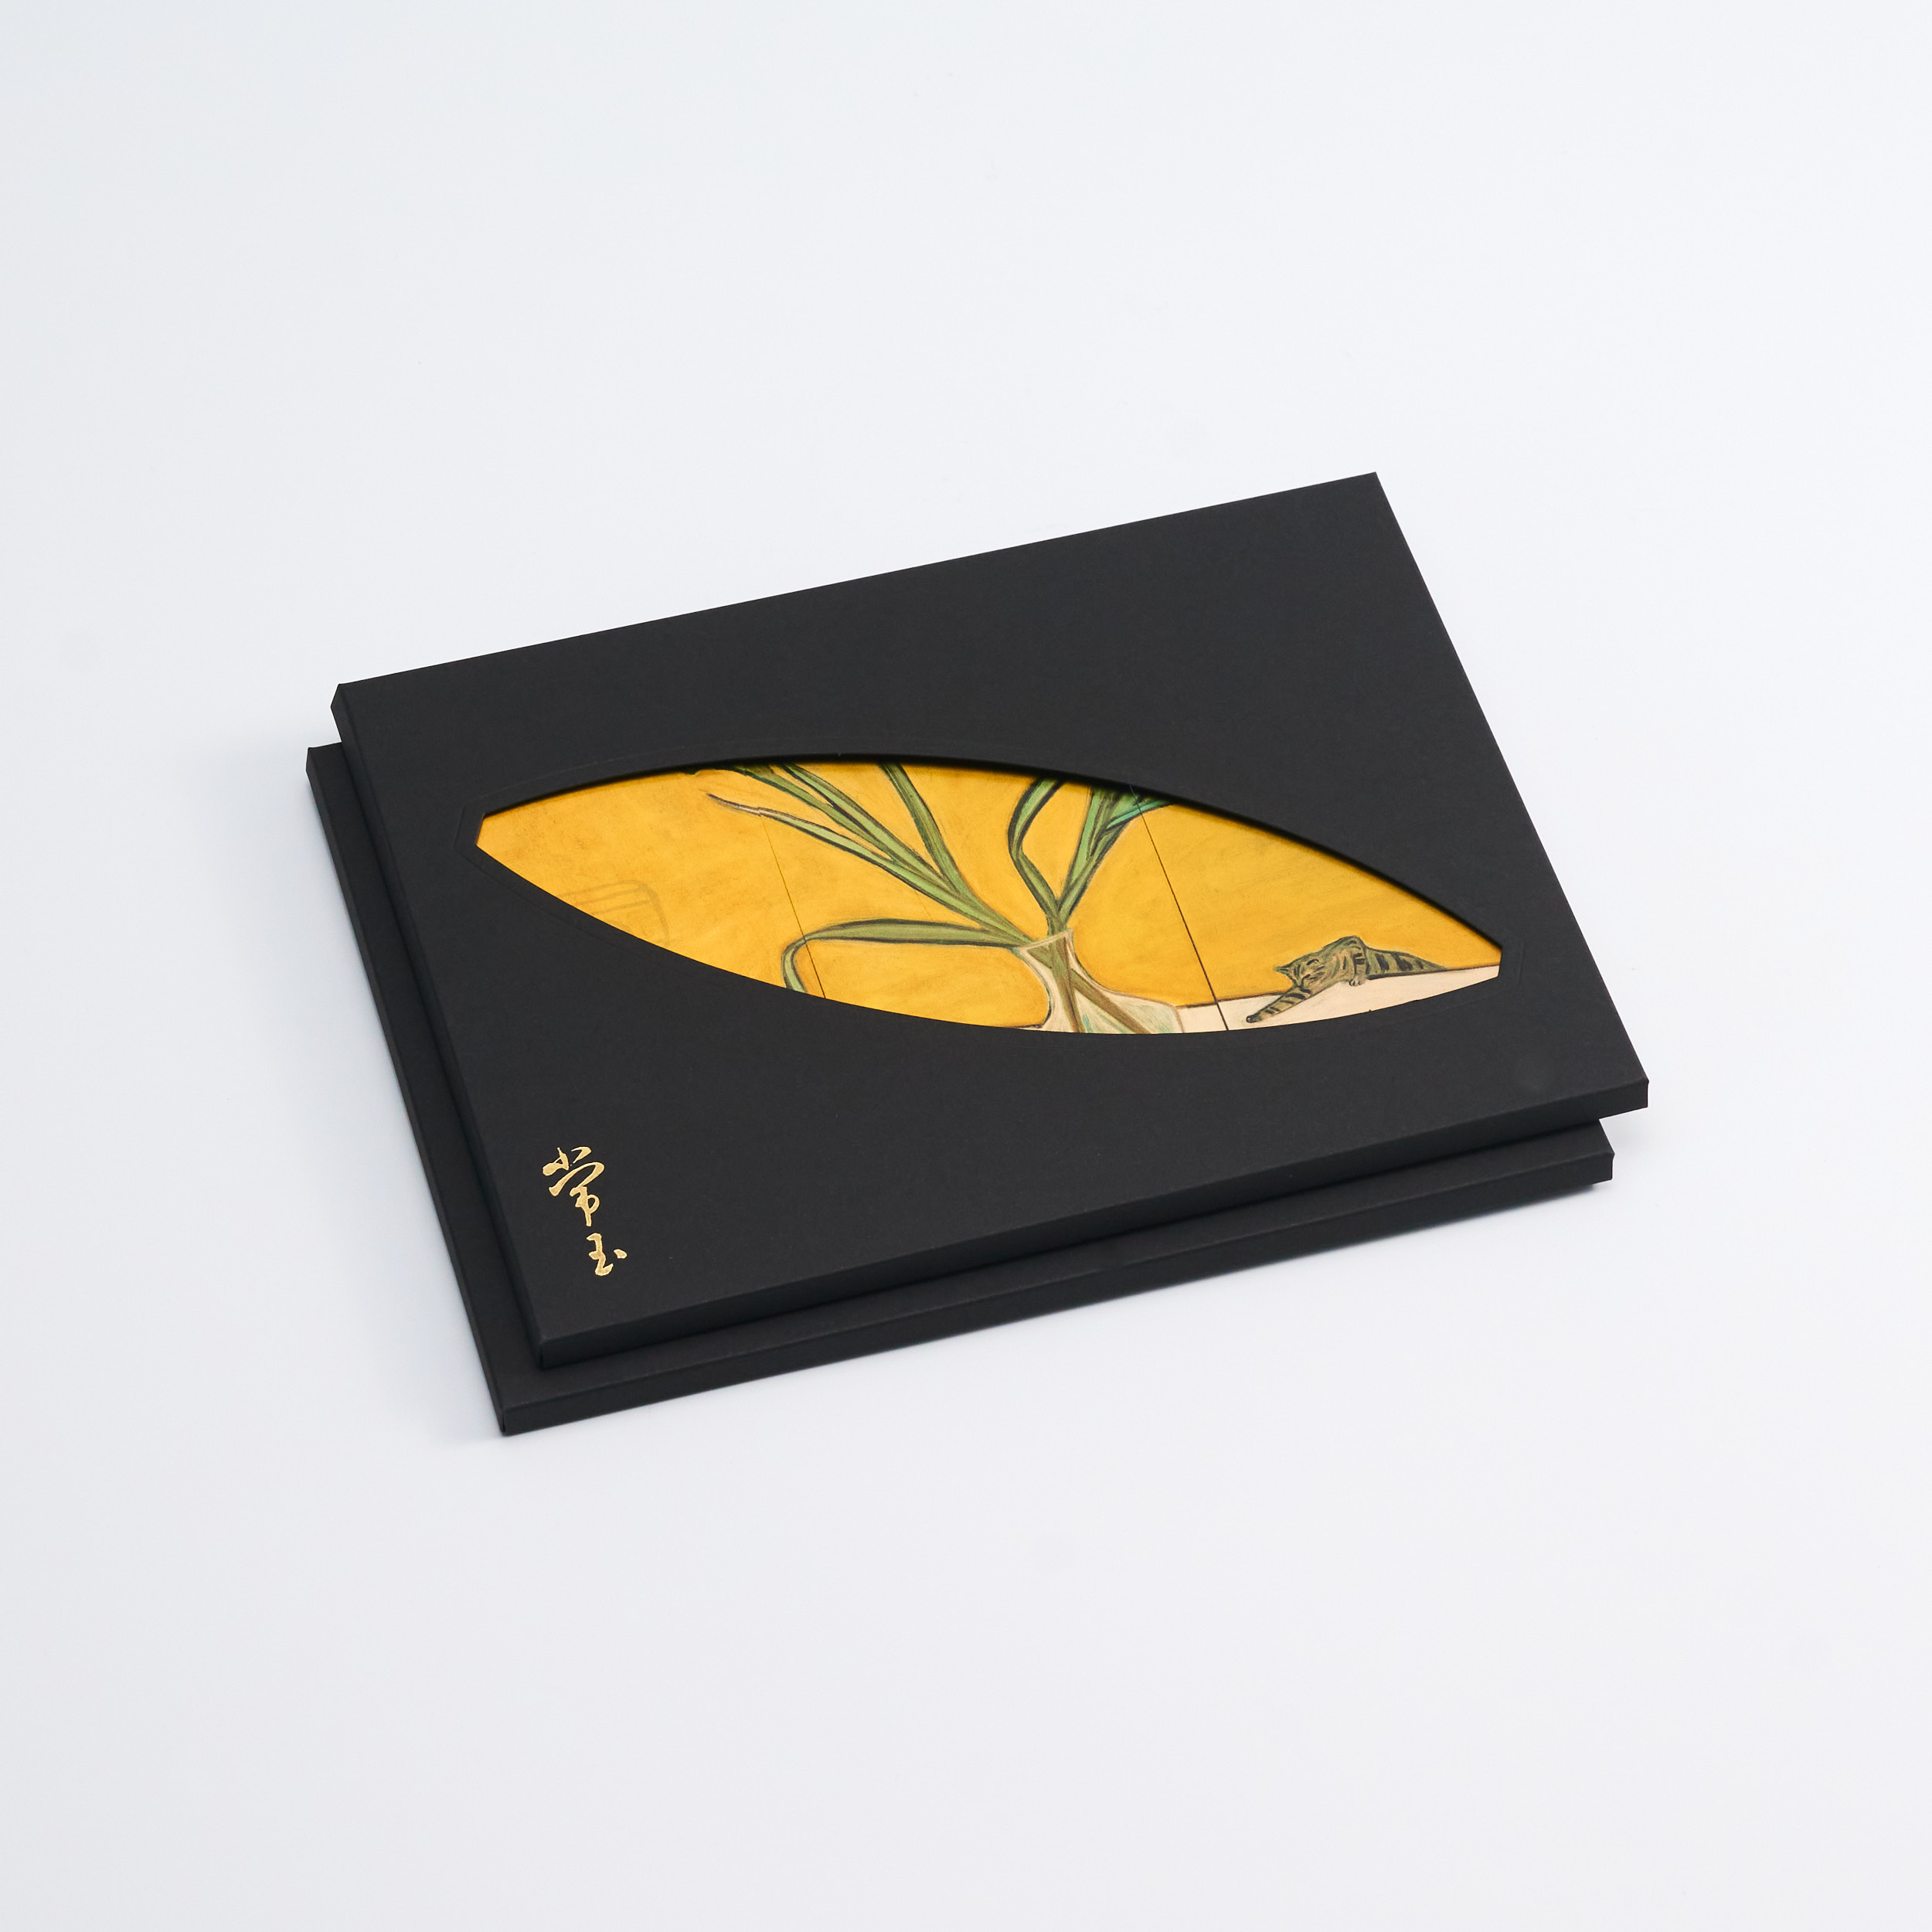 金質常玉手箋禮盒-花  Sanyu Golden Treasures Notepad Giftbox-Flowers